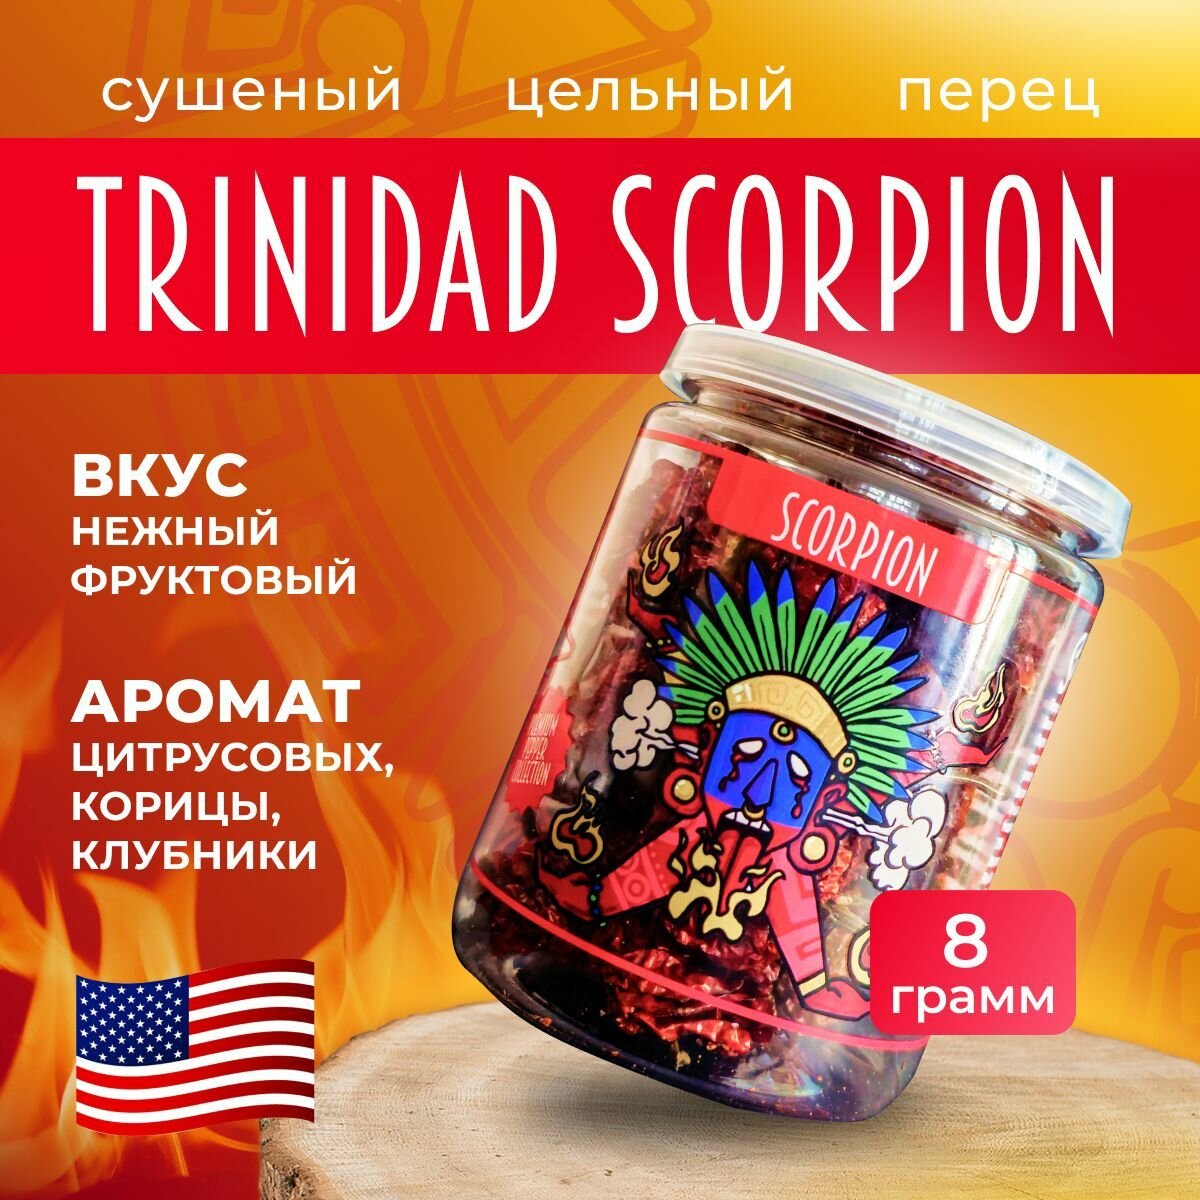 Второй по остроте перец в мире / Натуральный сушеный цельный острый перец Тринидад Скорпион Trinidad Scorpion Pepper